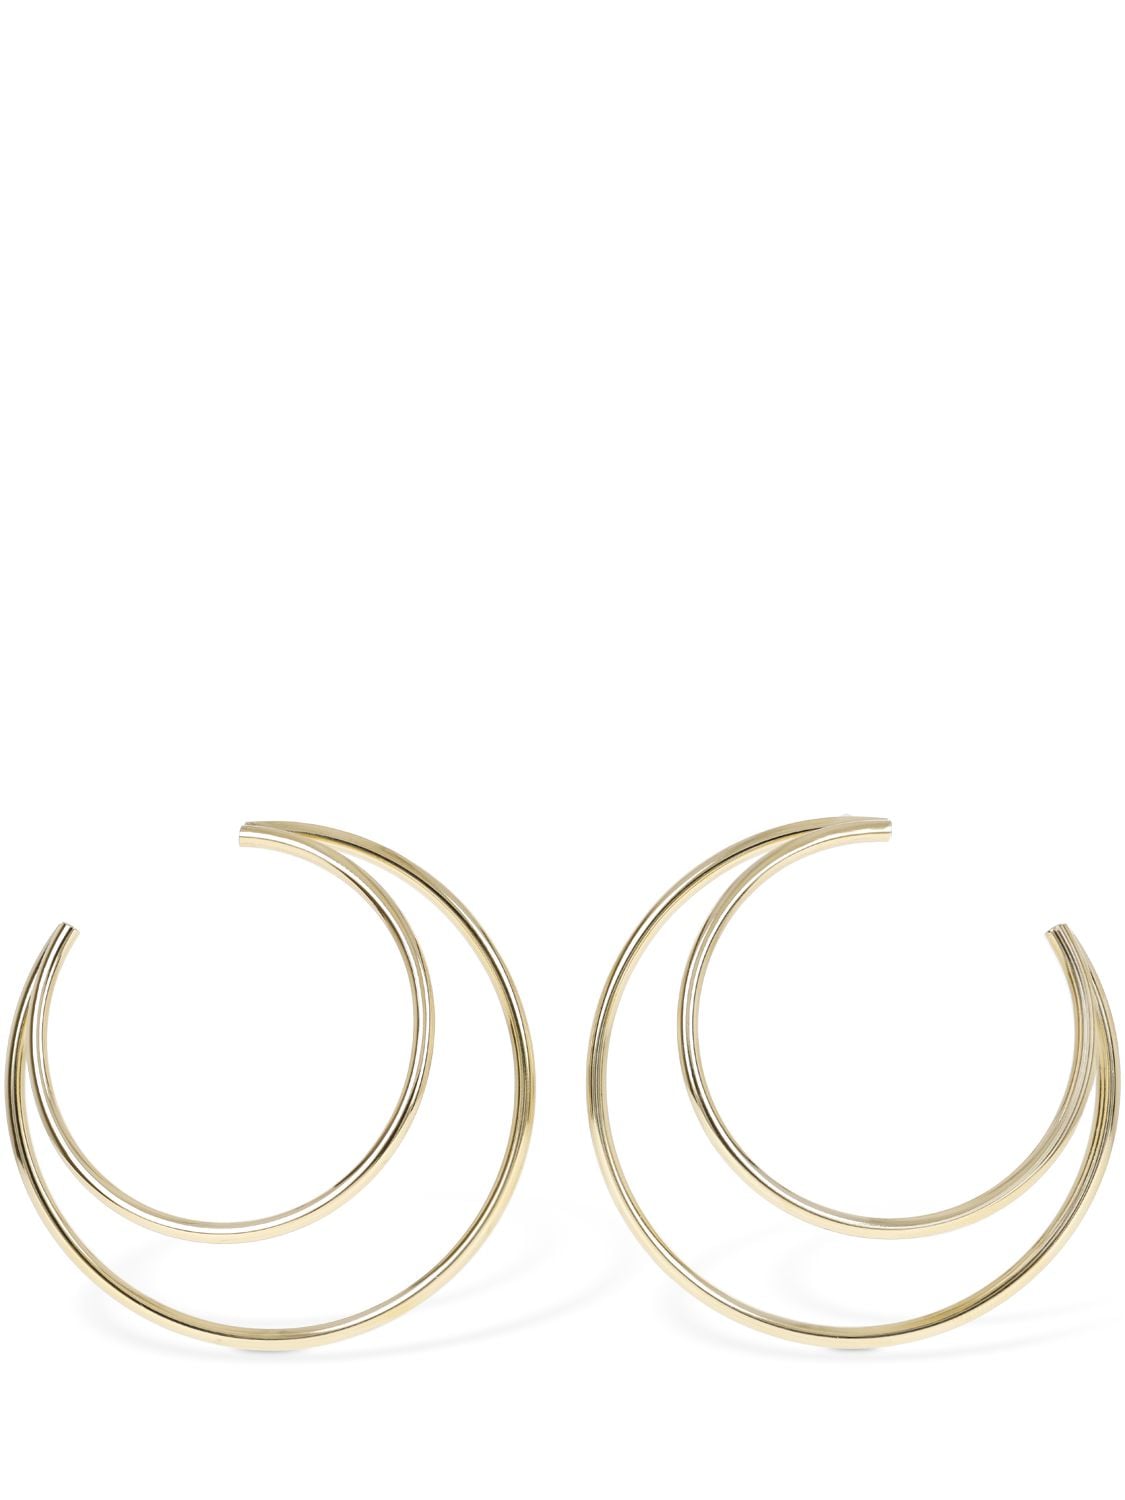 Marine Serre 6.5cm Moon Hoop Earrings In Gold